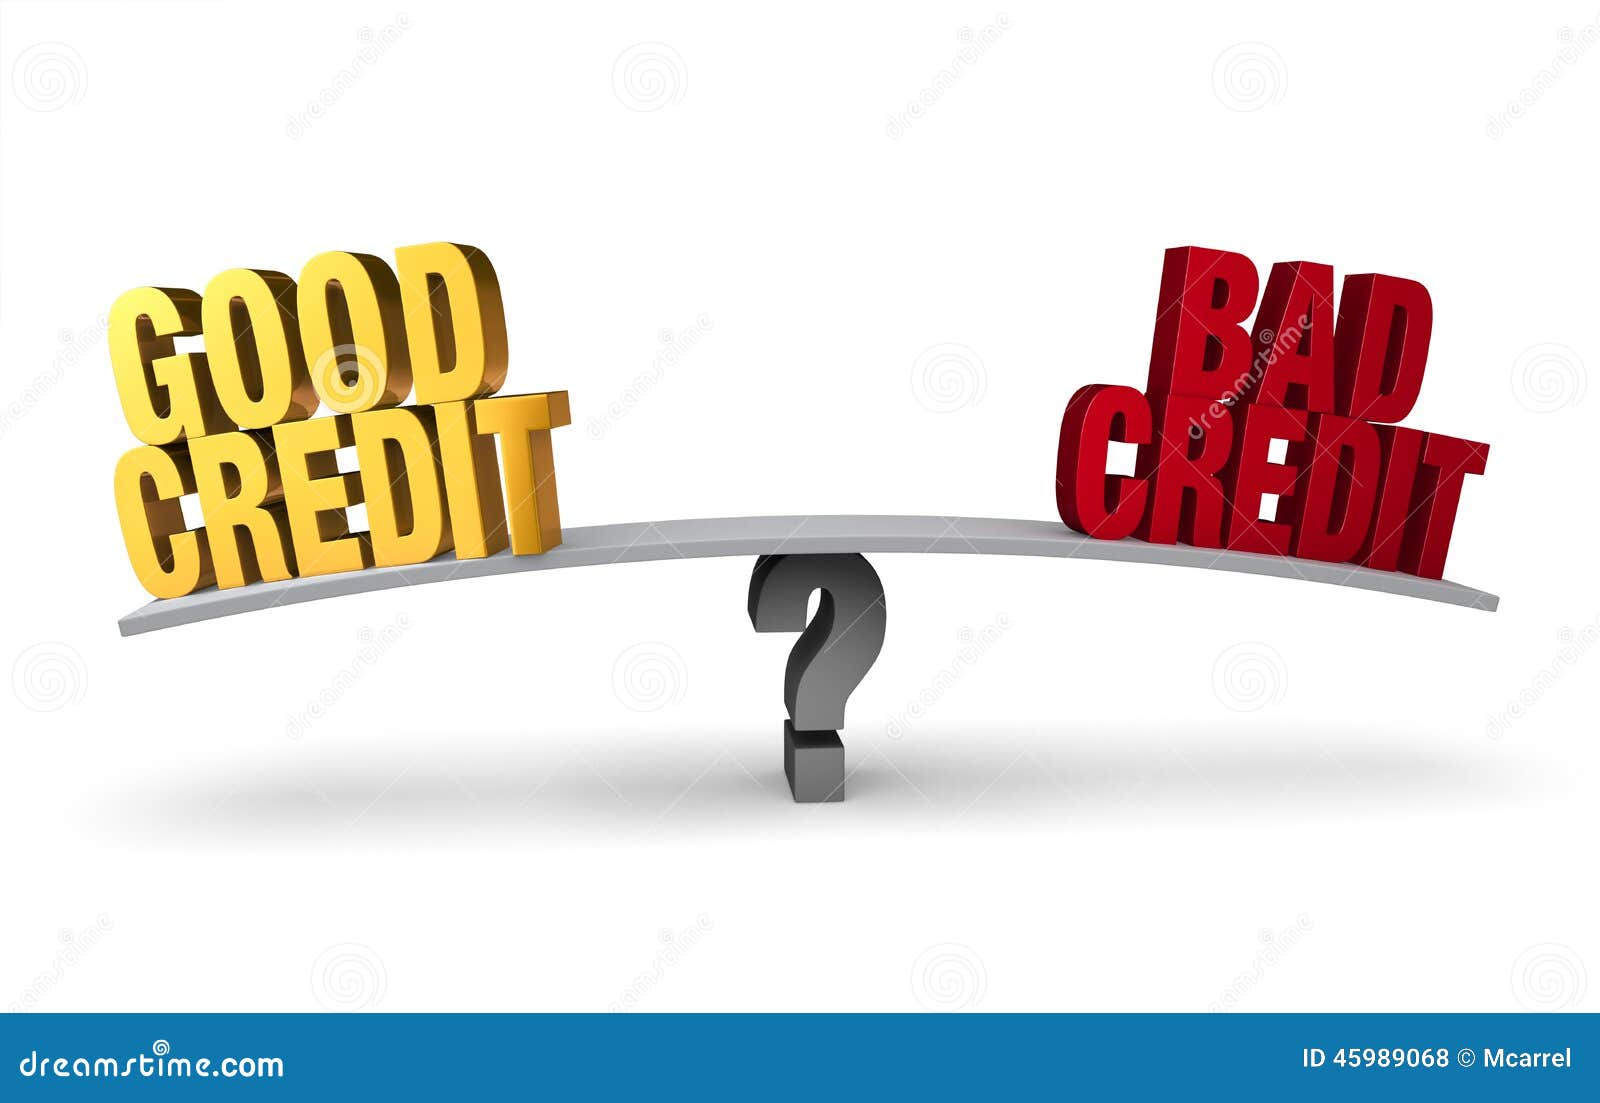 good credit versus bad credit